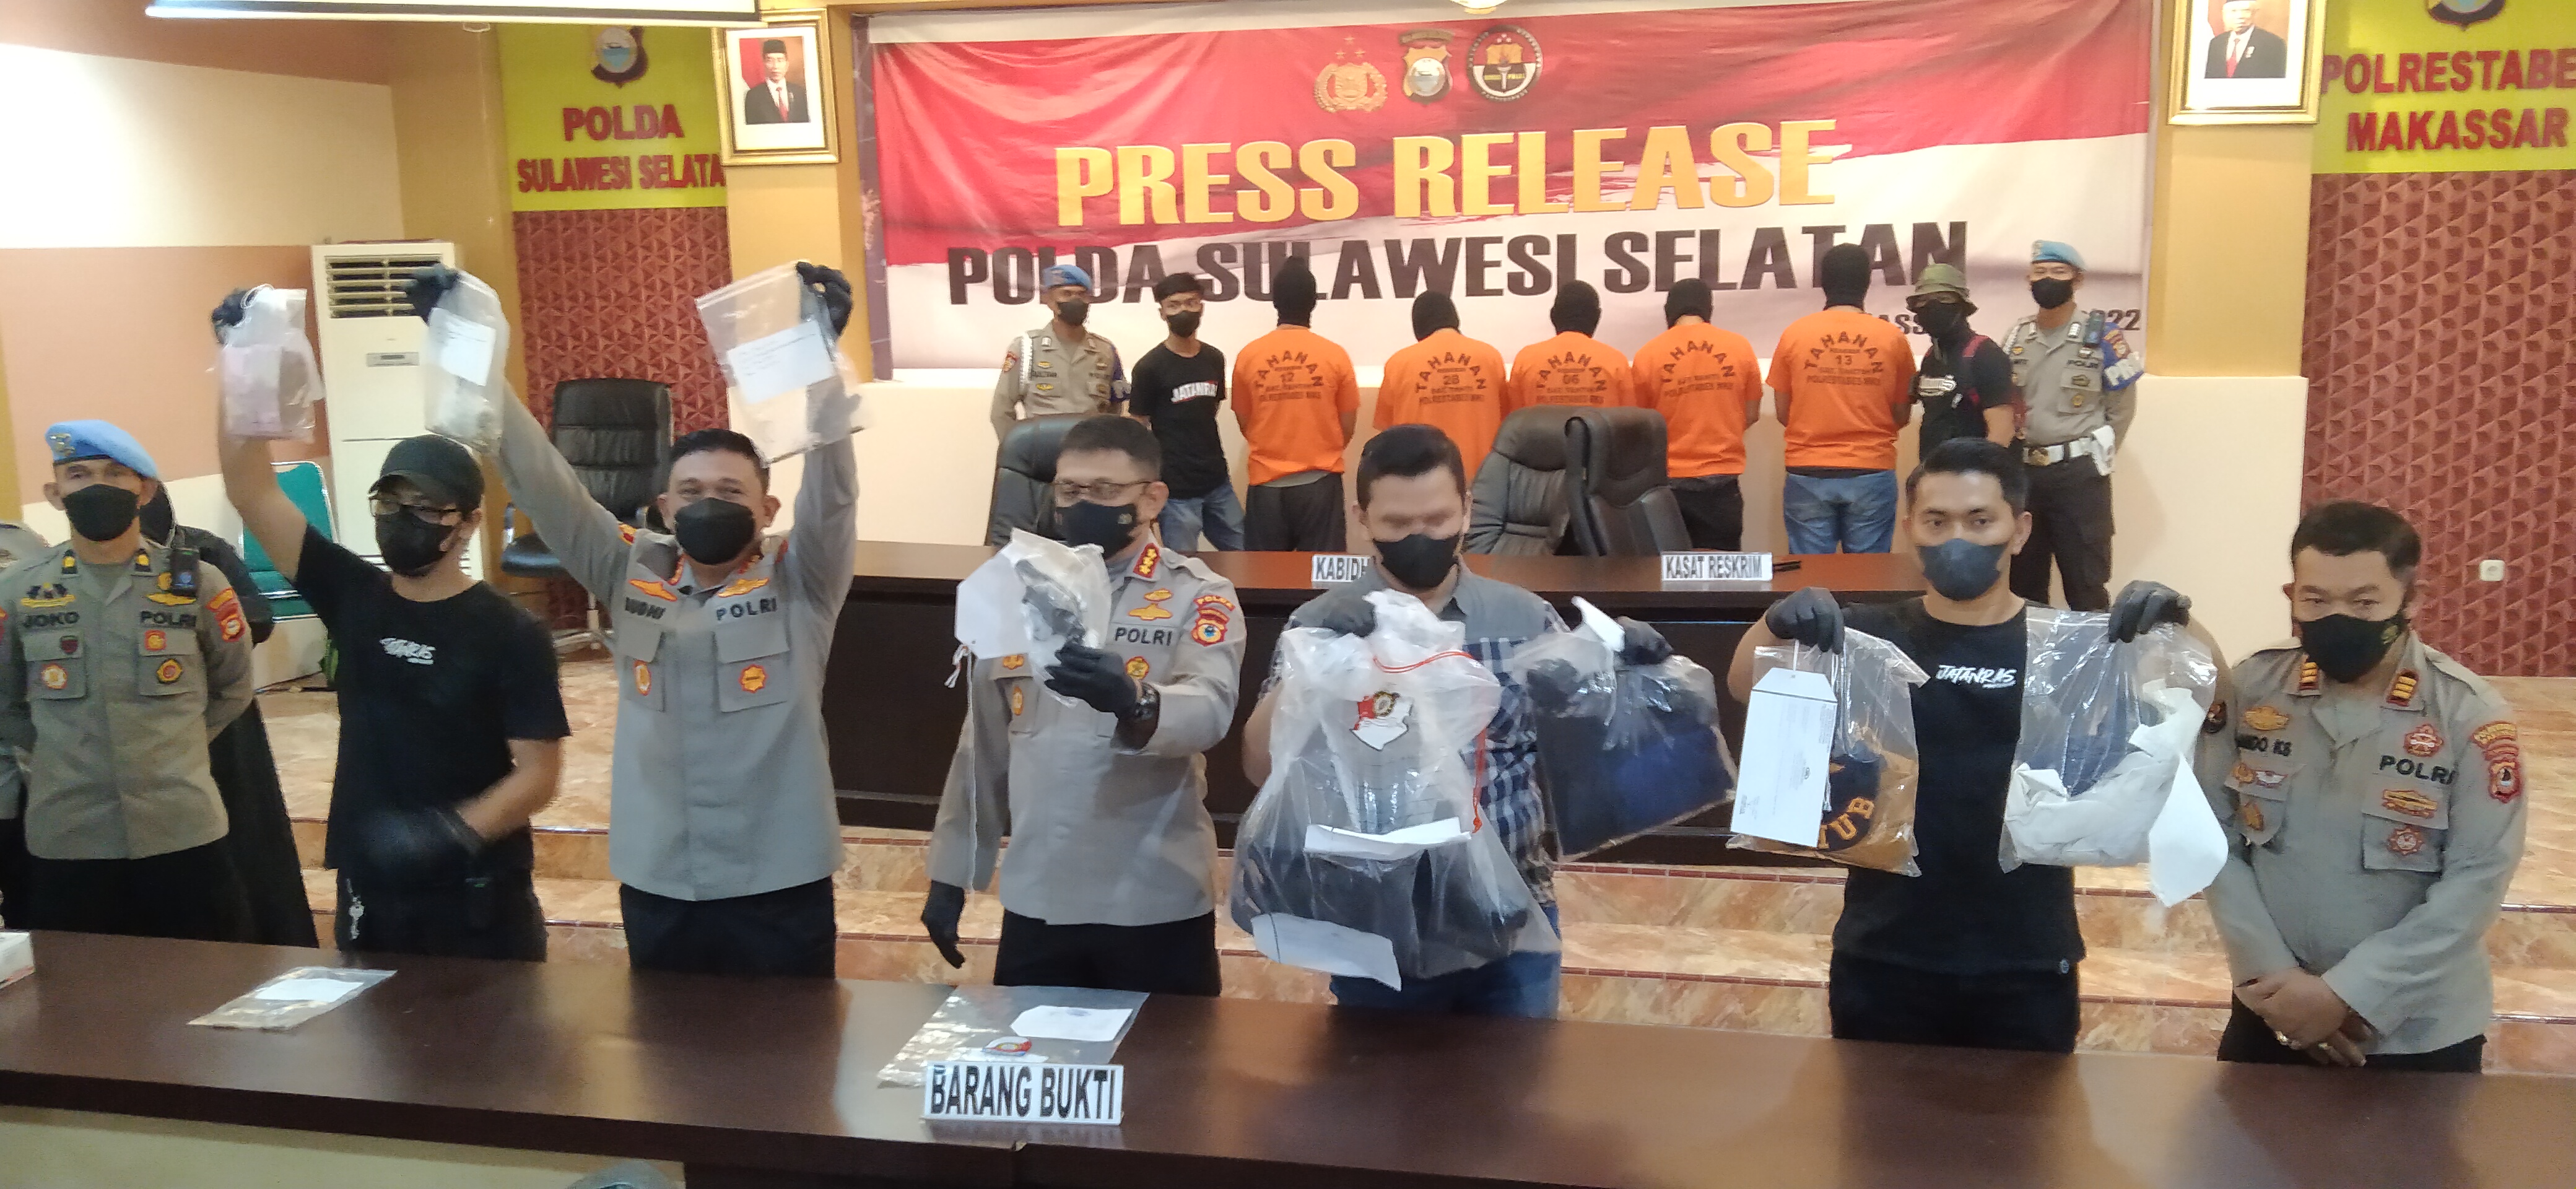 Eksekutor Petugas Dishub Makassar, Oknum Polisi